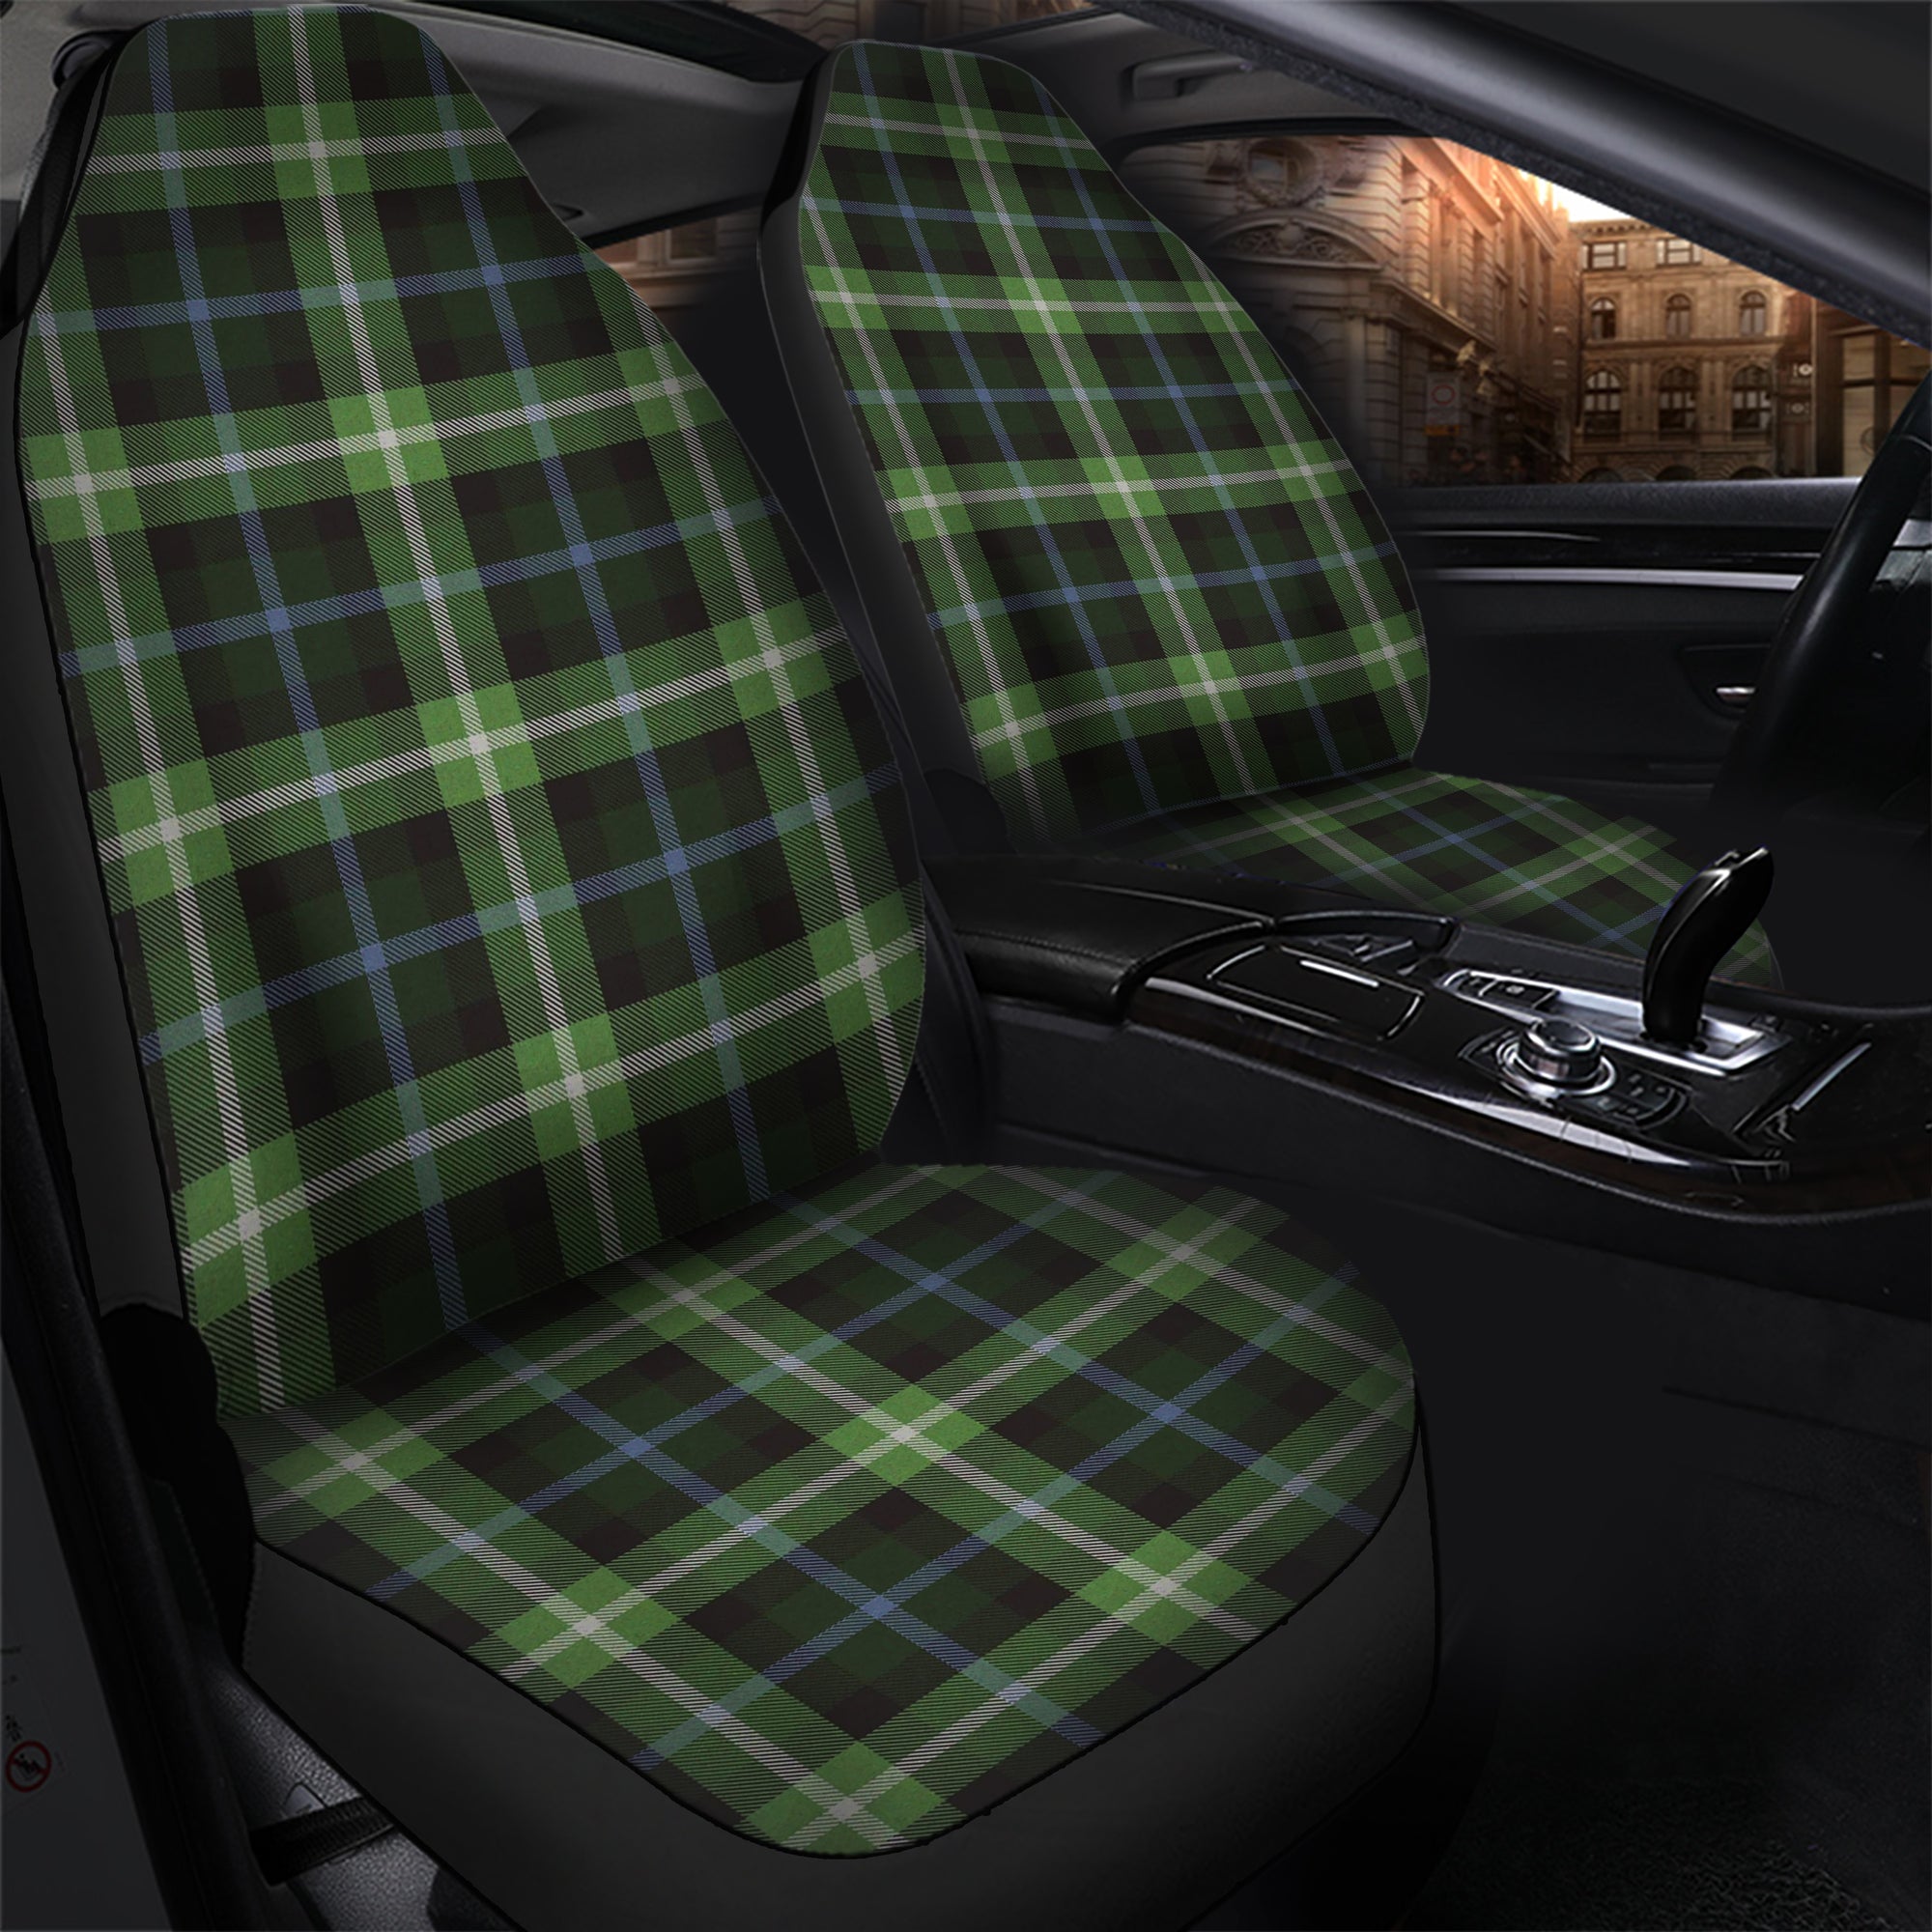 scottish-rodger-clan-tartan-car-seat-cover